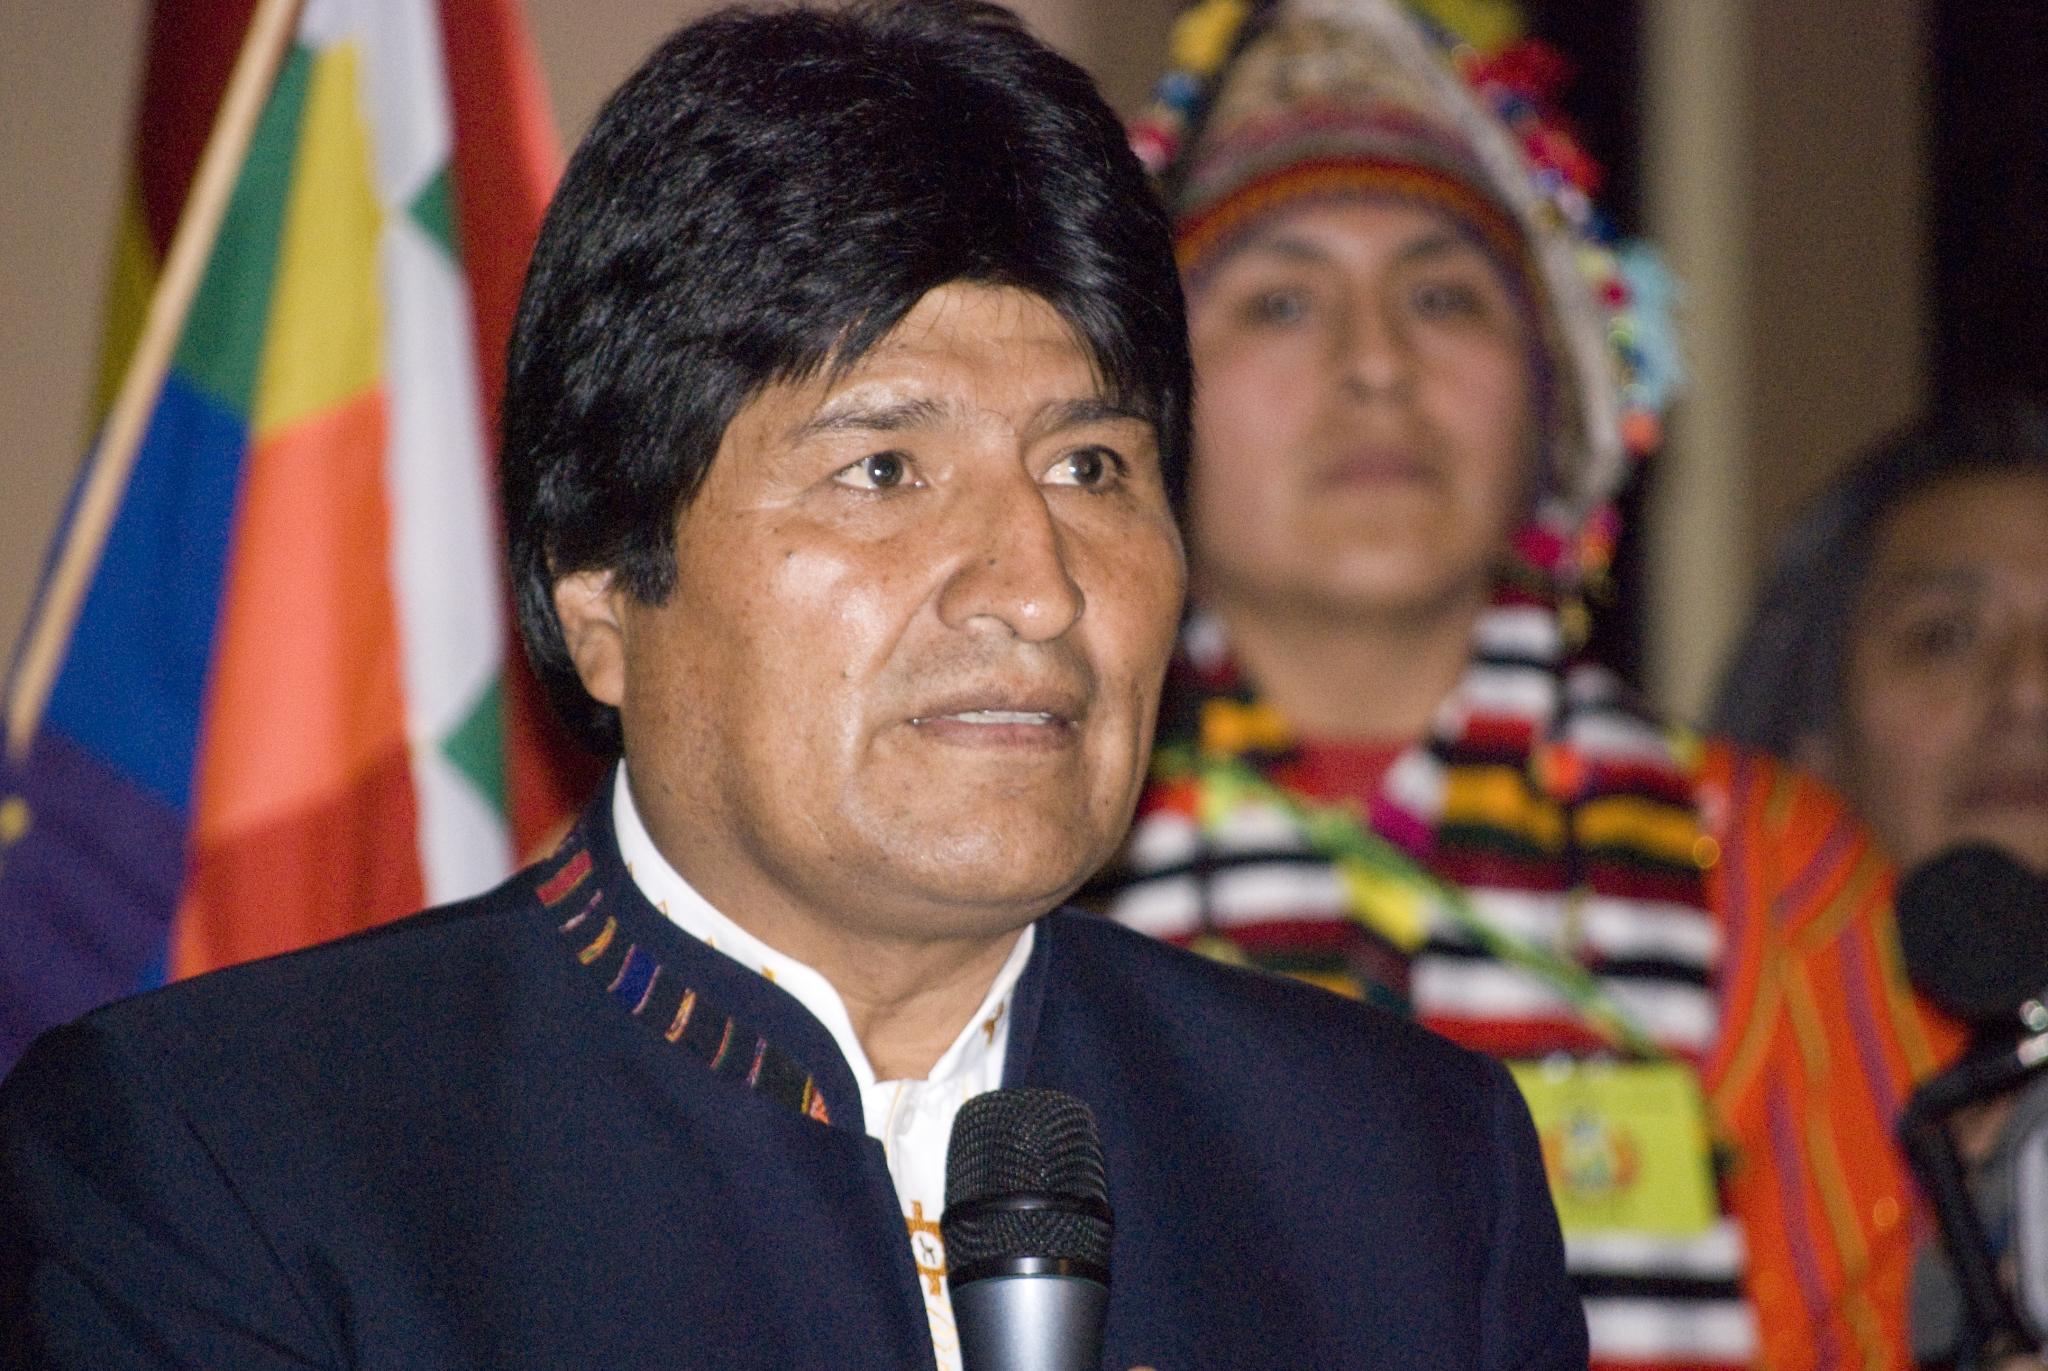 Evo Morales auf der Akademie der bildenden Künste in Wien